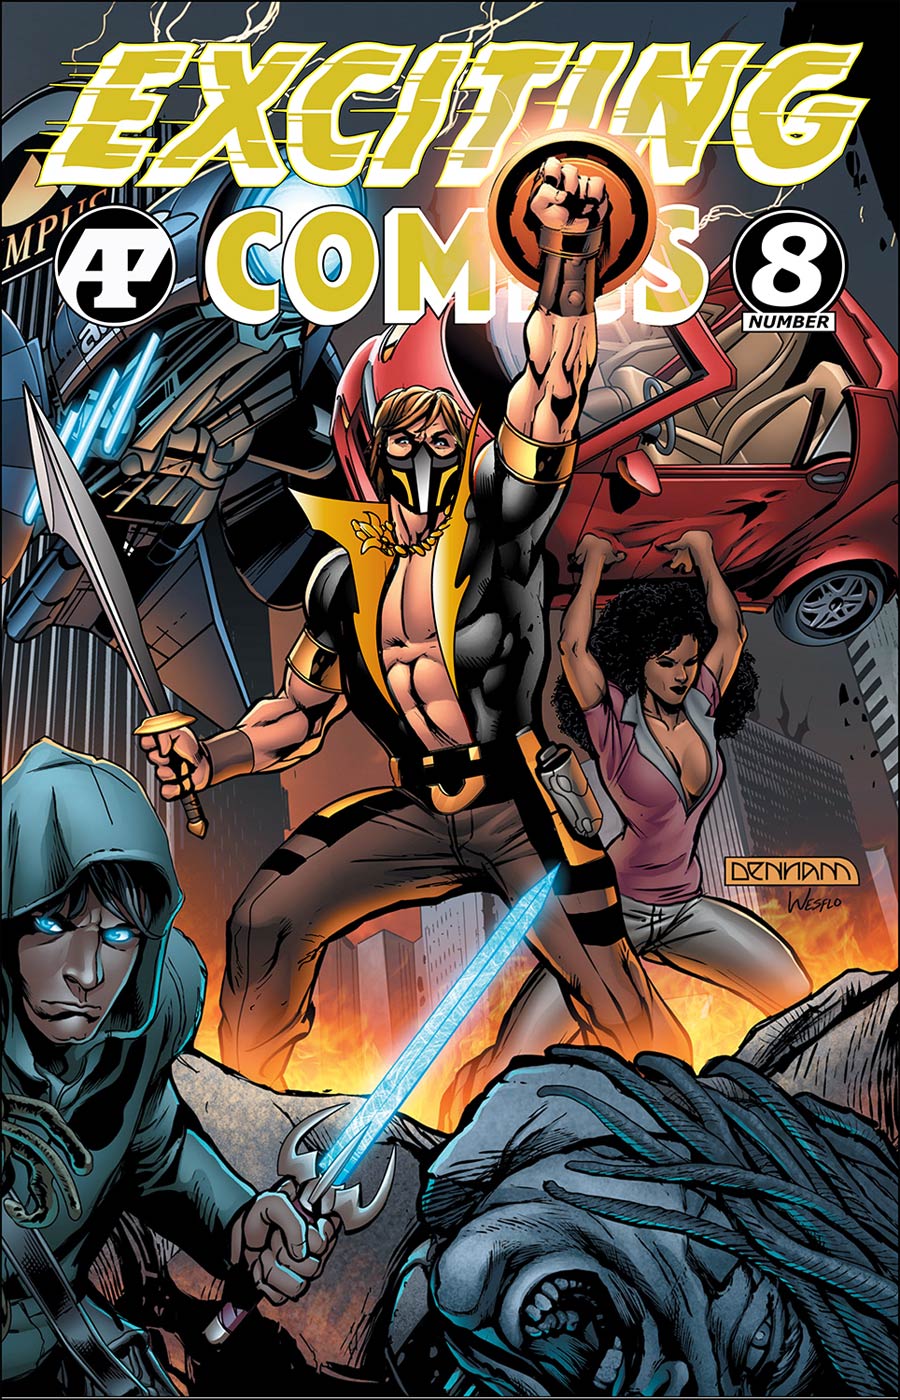 Exciting Comics Vol 2 #8